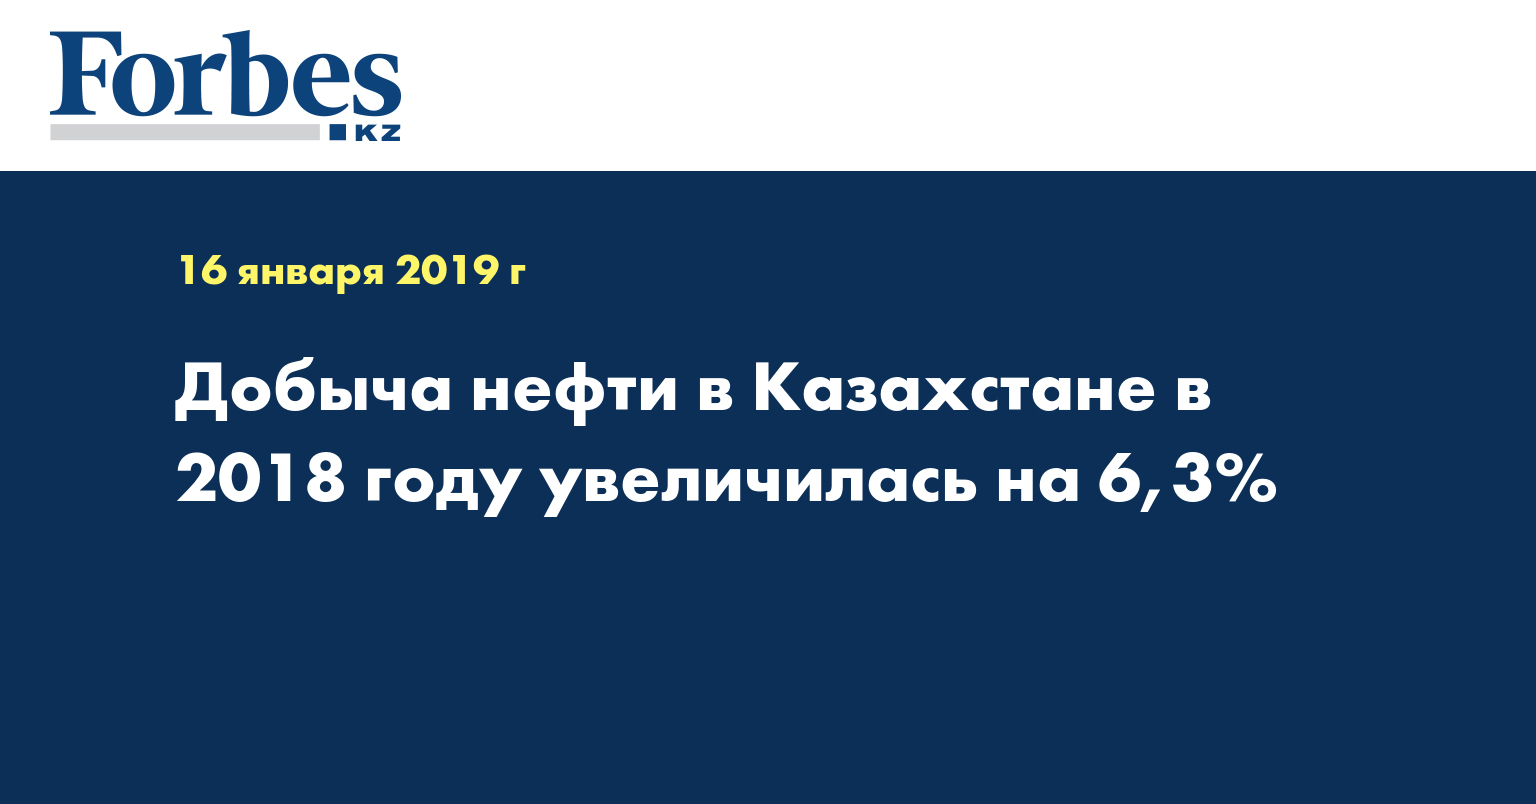 Добыча нефти в Казахстане в 2018 году увеличилась на 6,3%